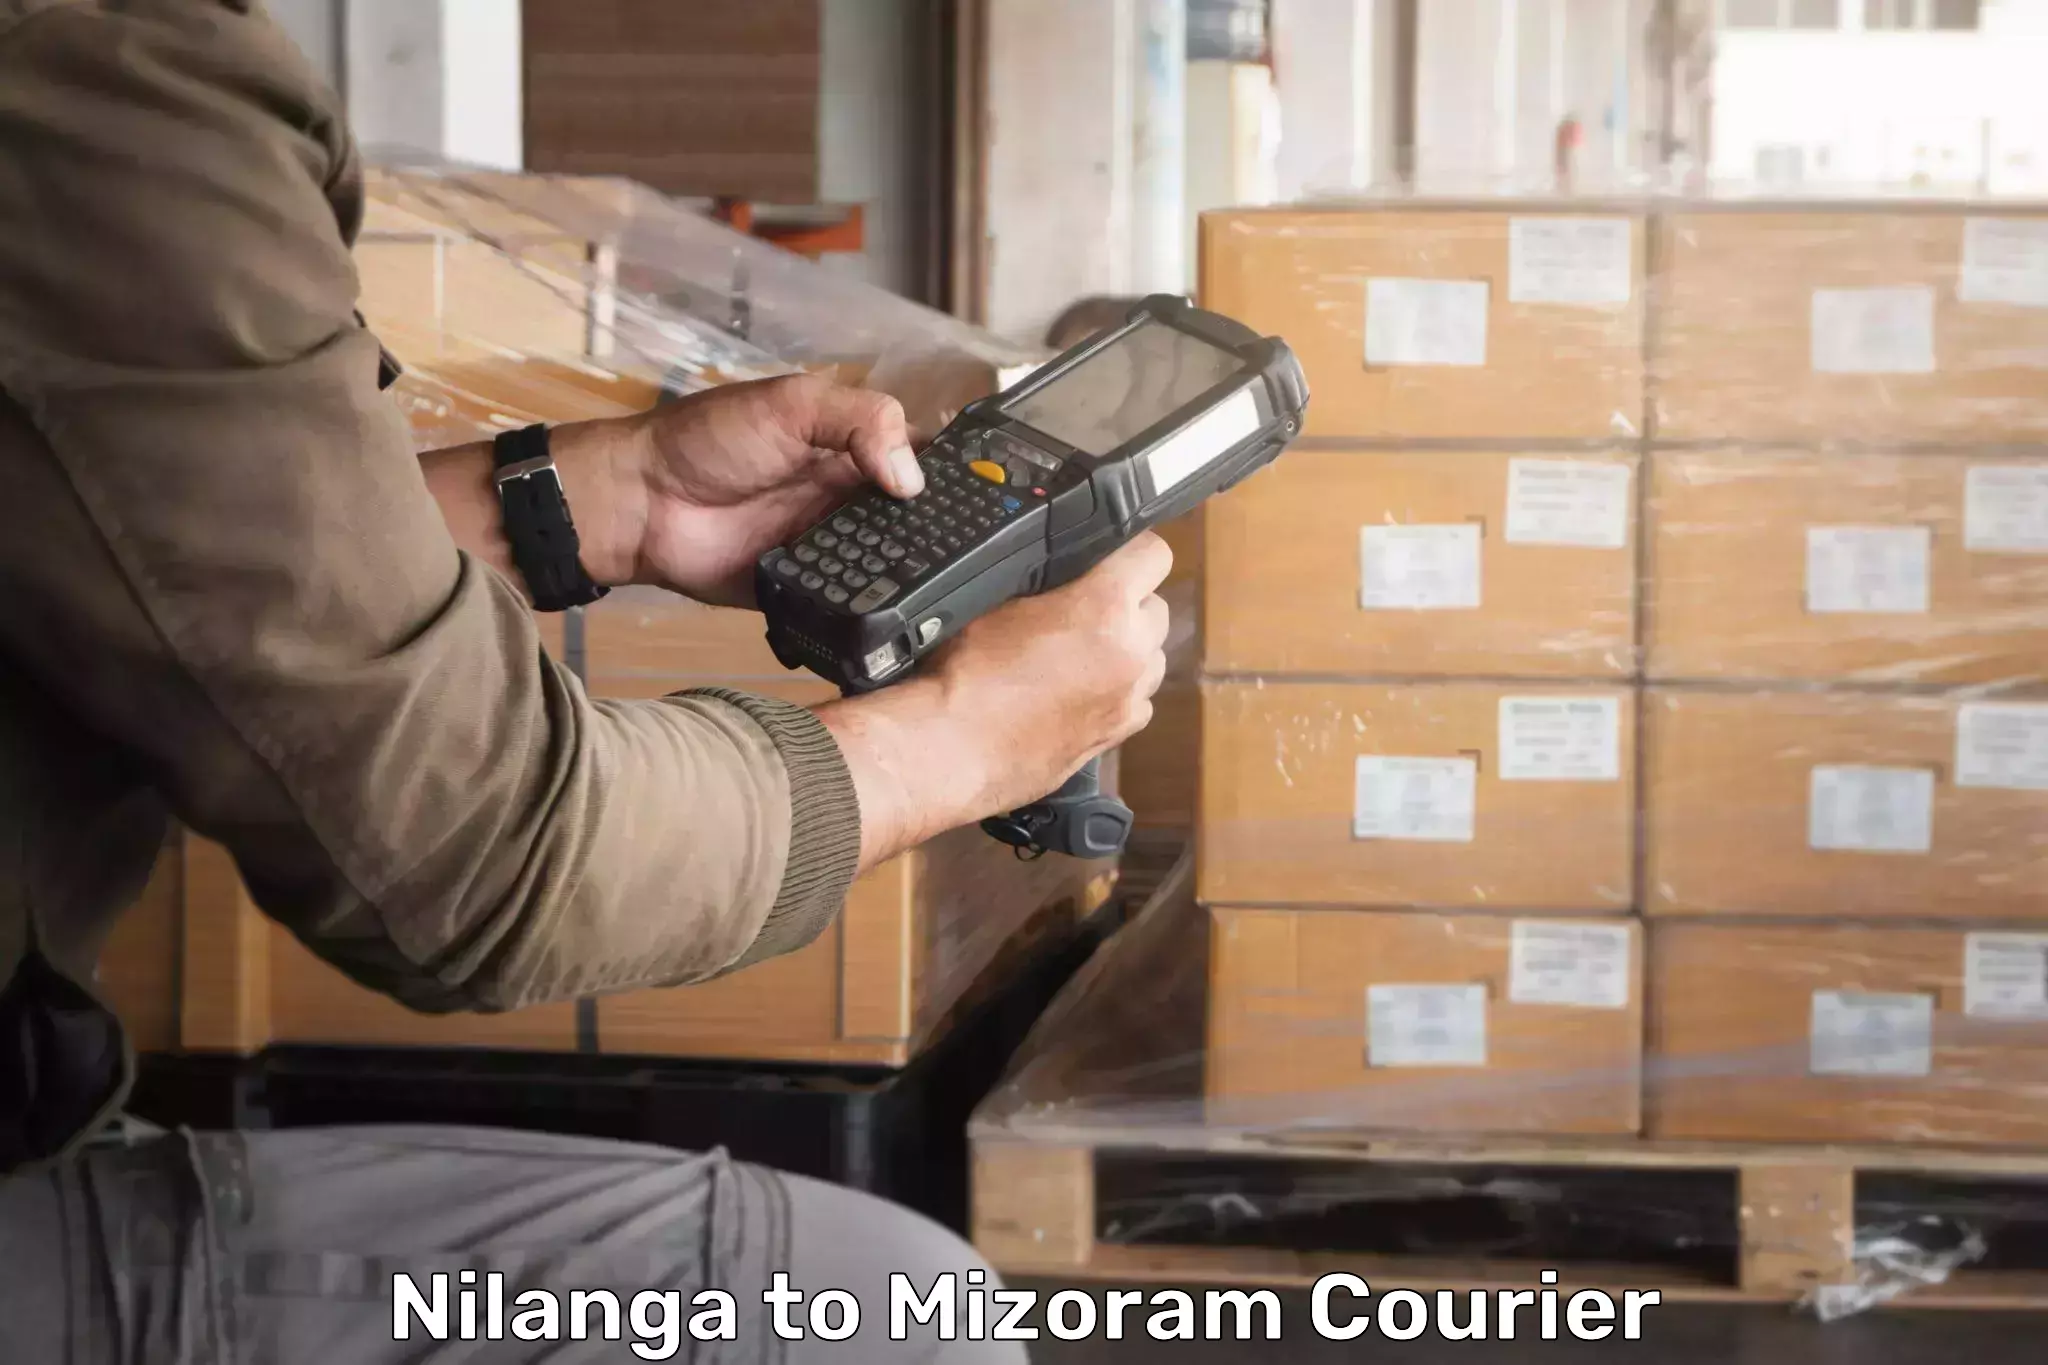 Customer-focused courier Nilanga to Mizoram